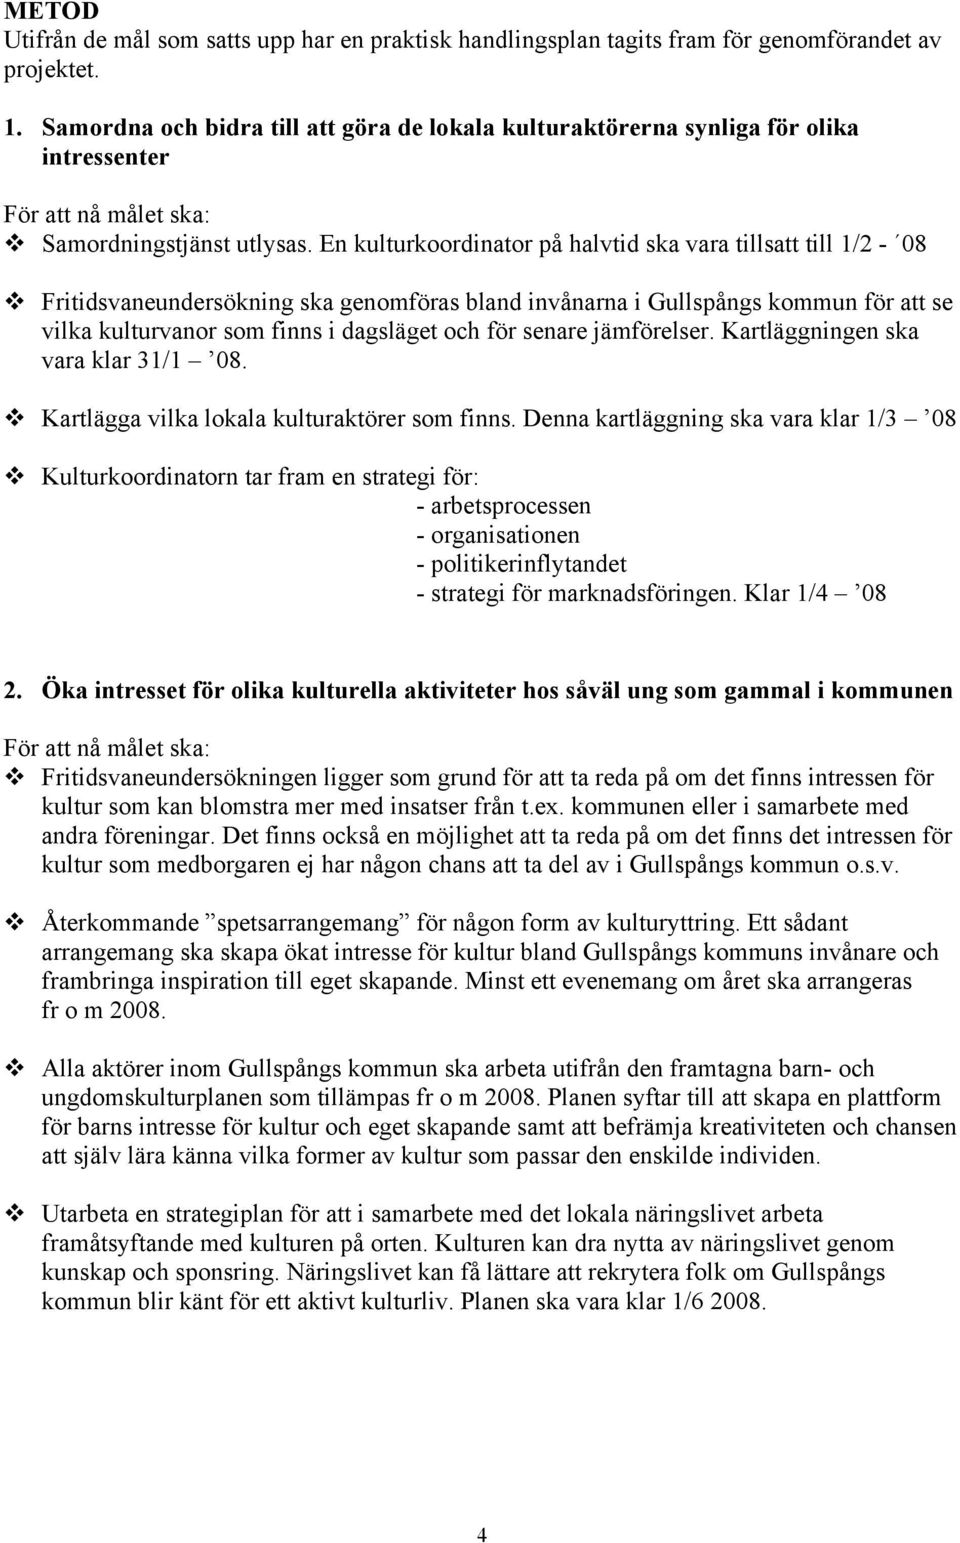 Fritidsvaneundersökning ska genomföras bland invånarna i Gullspångs kommun för att se vilka kulturvanor som finns i dagsläget och för senare jämförelser. Kartläggningen ska vara klar 31/1 08.